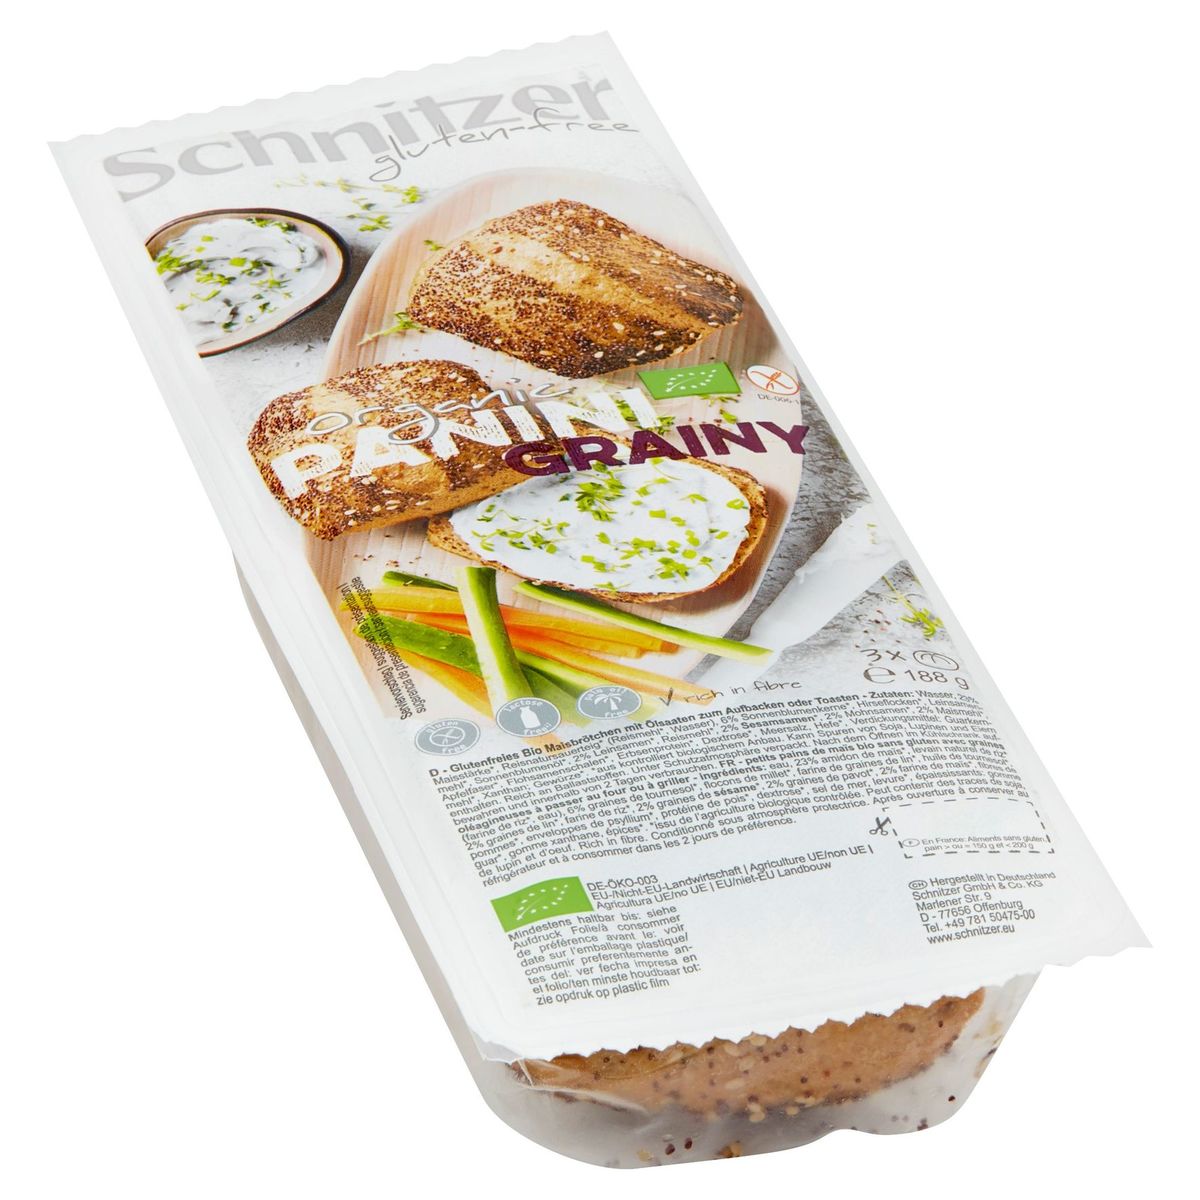 Schnitzer Gluten-Free Organic Panini Grainy 188 g